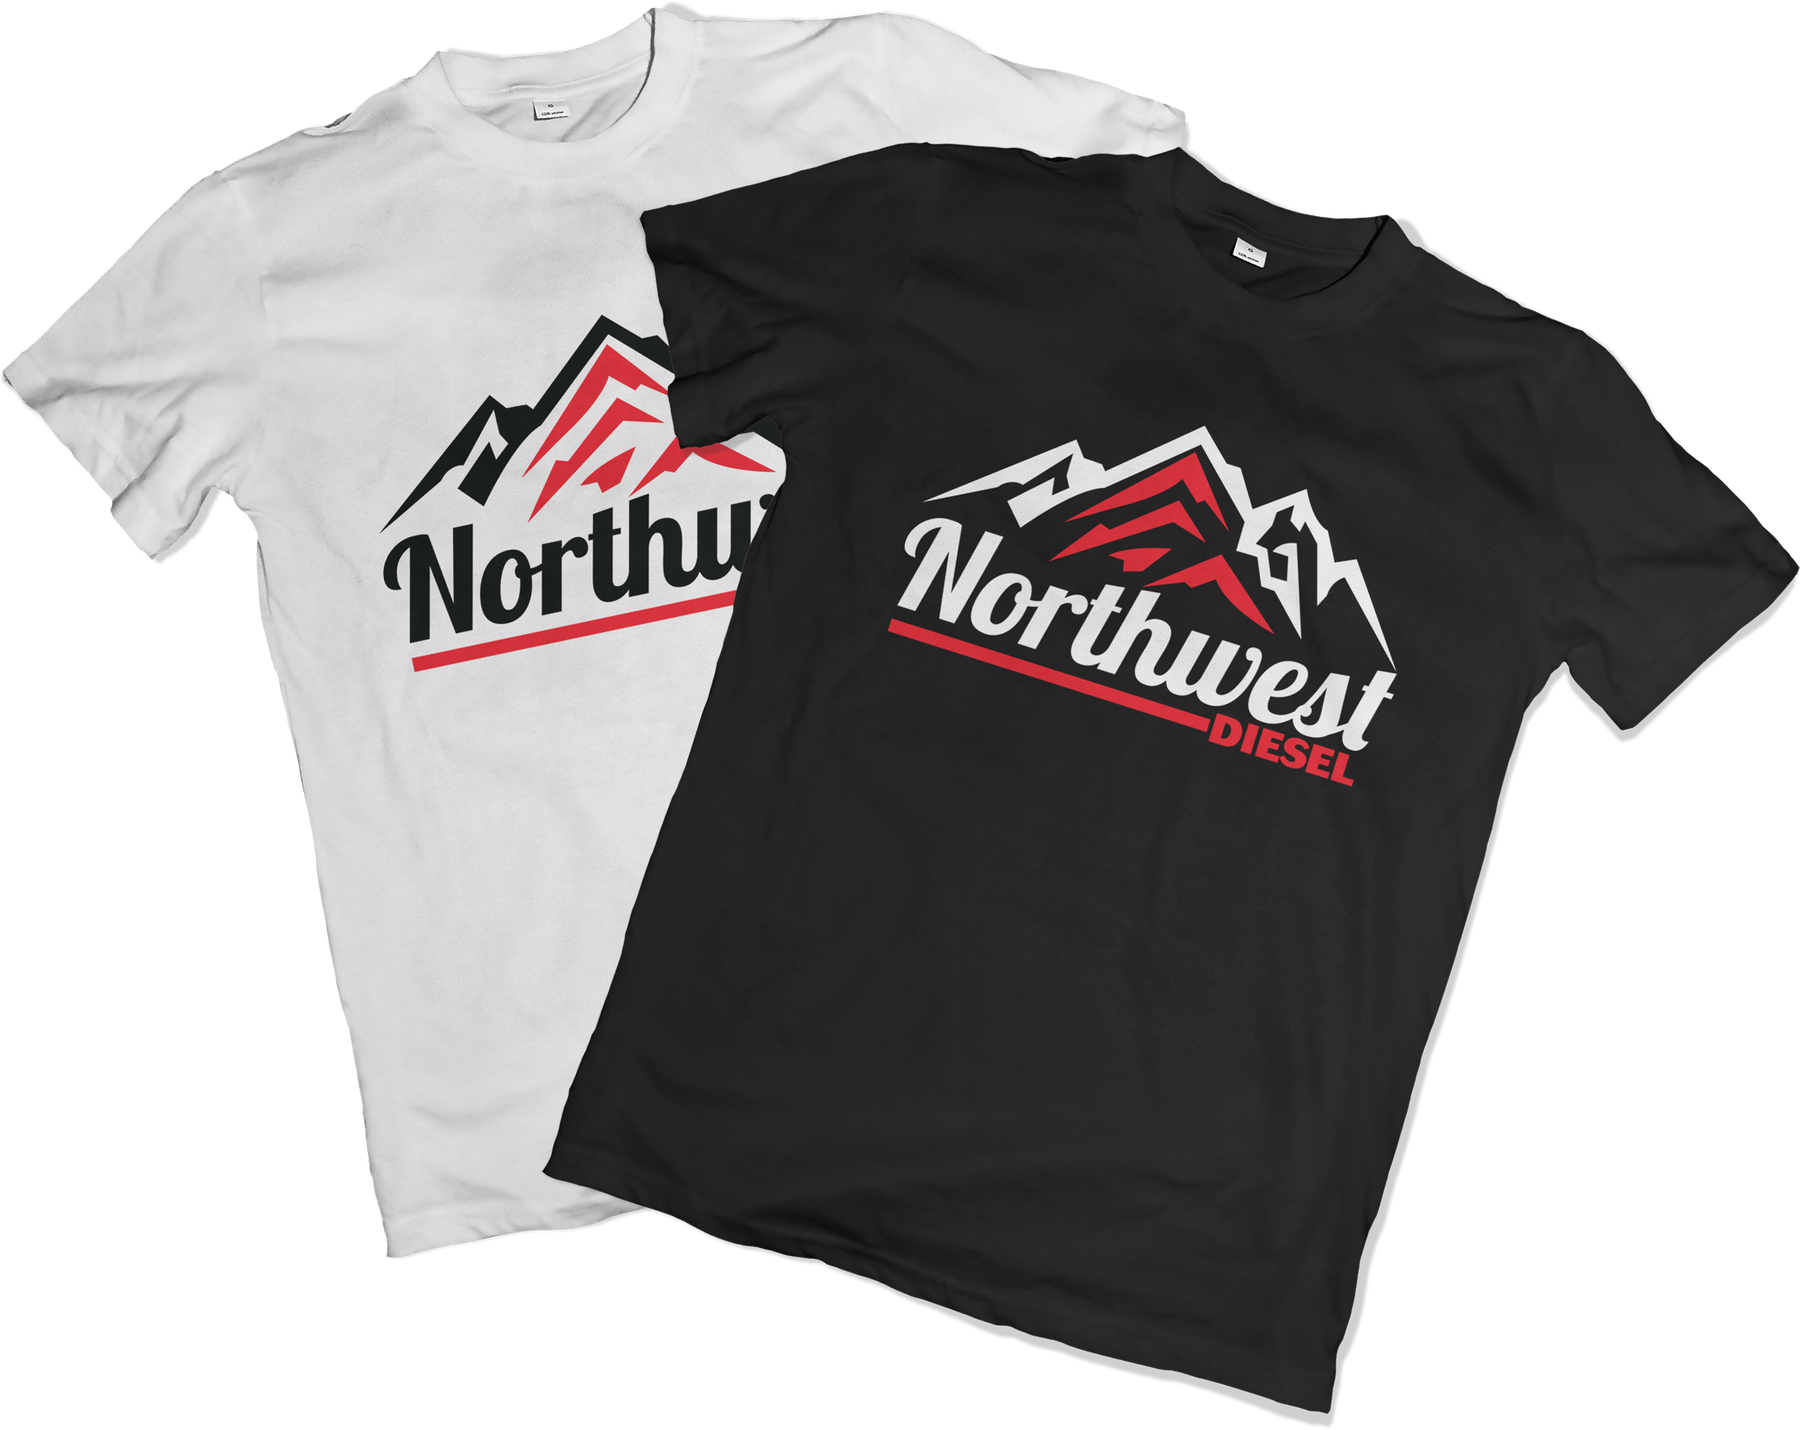 Northwest Diesel Men's T-Shirts